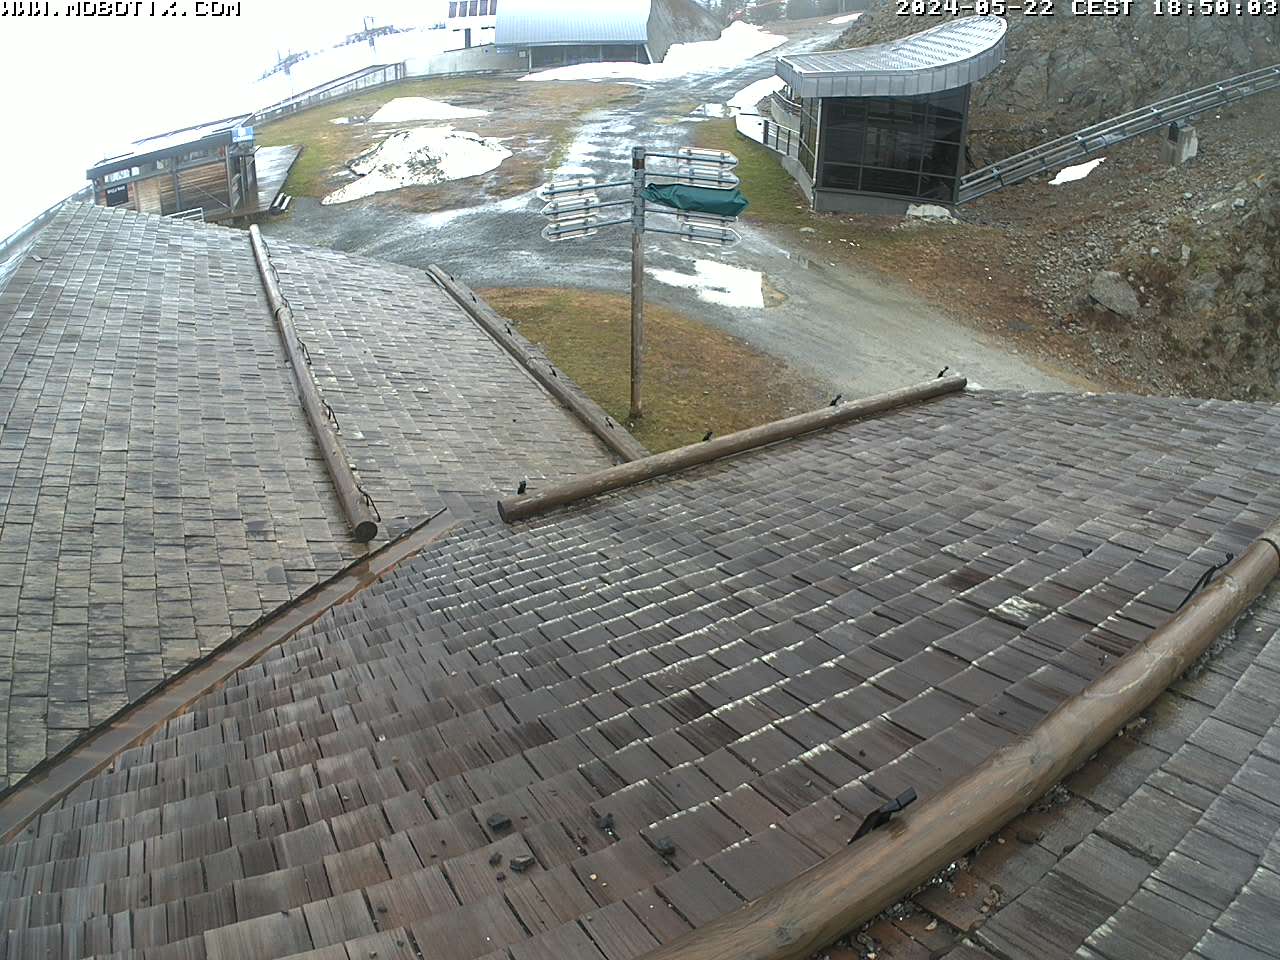 Chamonix webcam - Brevent bottom gondola station